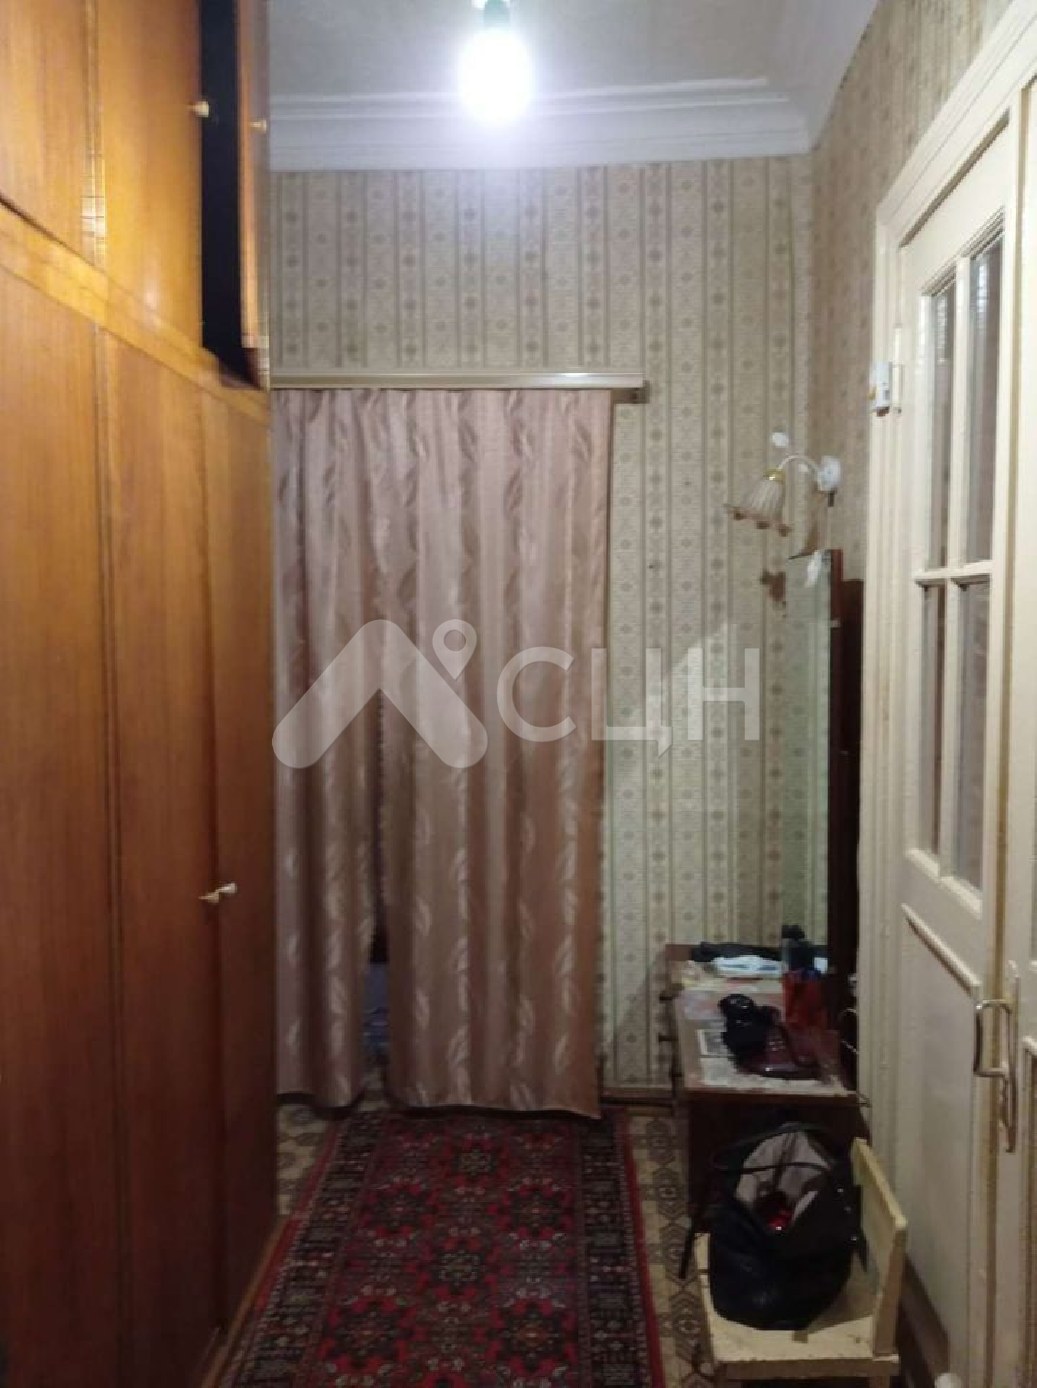 домклик саров квартиры
: Г. Саров, улица Ушакова, 18, 2-комн квартира, этаж 2 из 3, продажа.